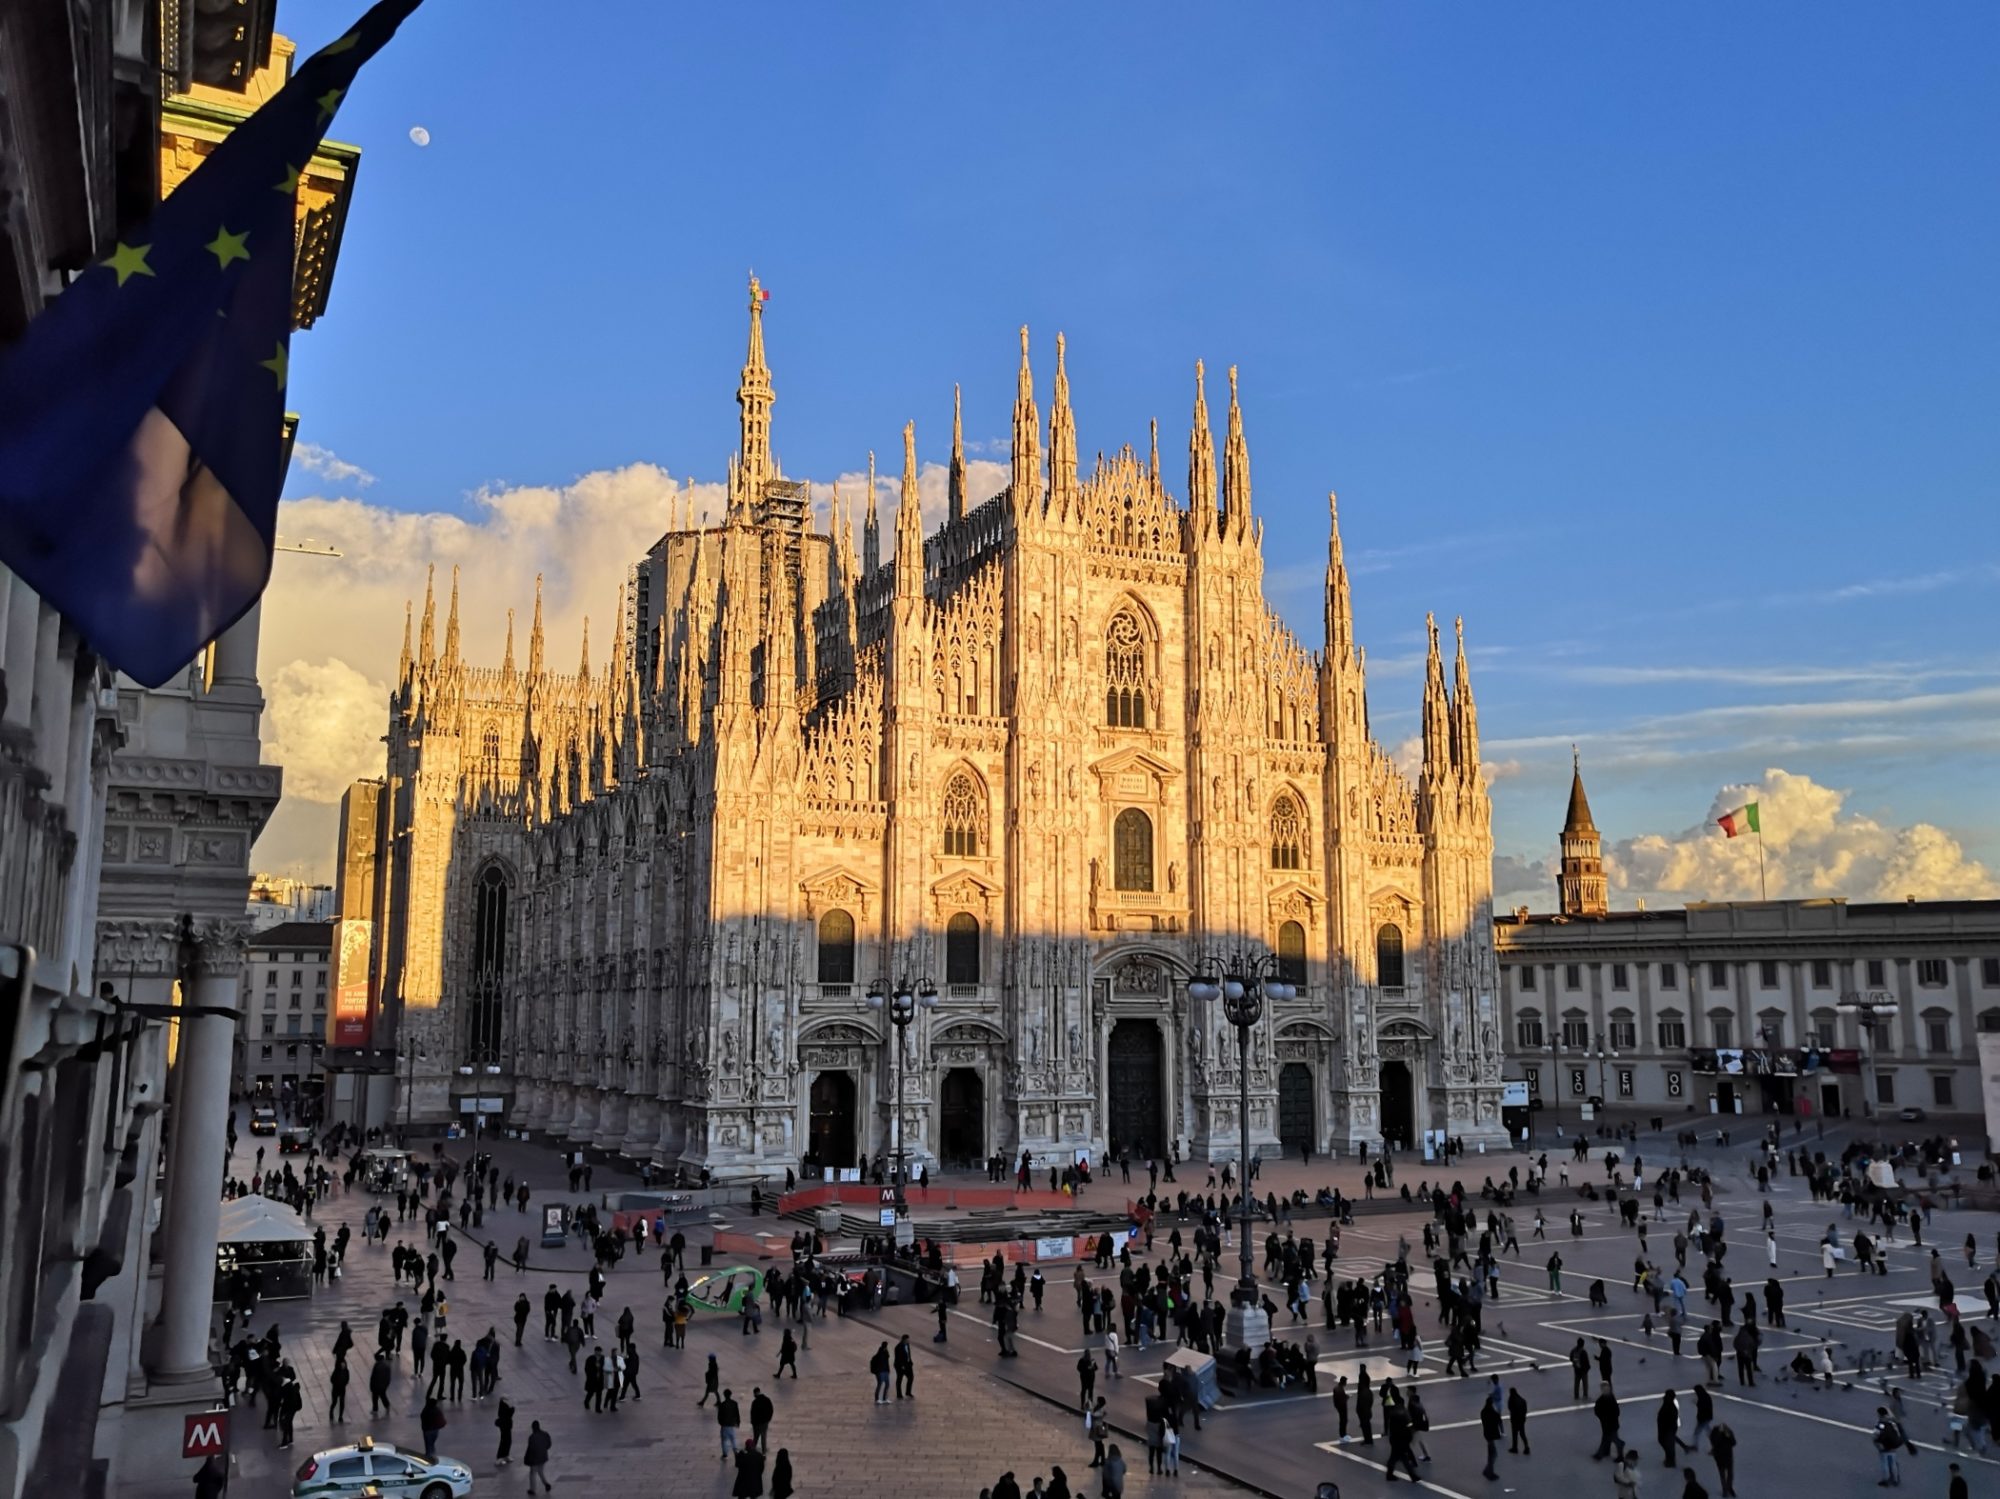  Milán – ciudad de 1,3 millones de personas con una fuerte cultura alimentaria